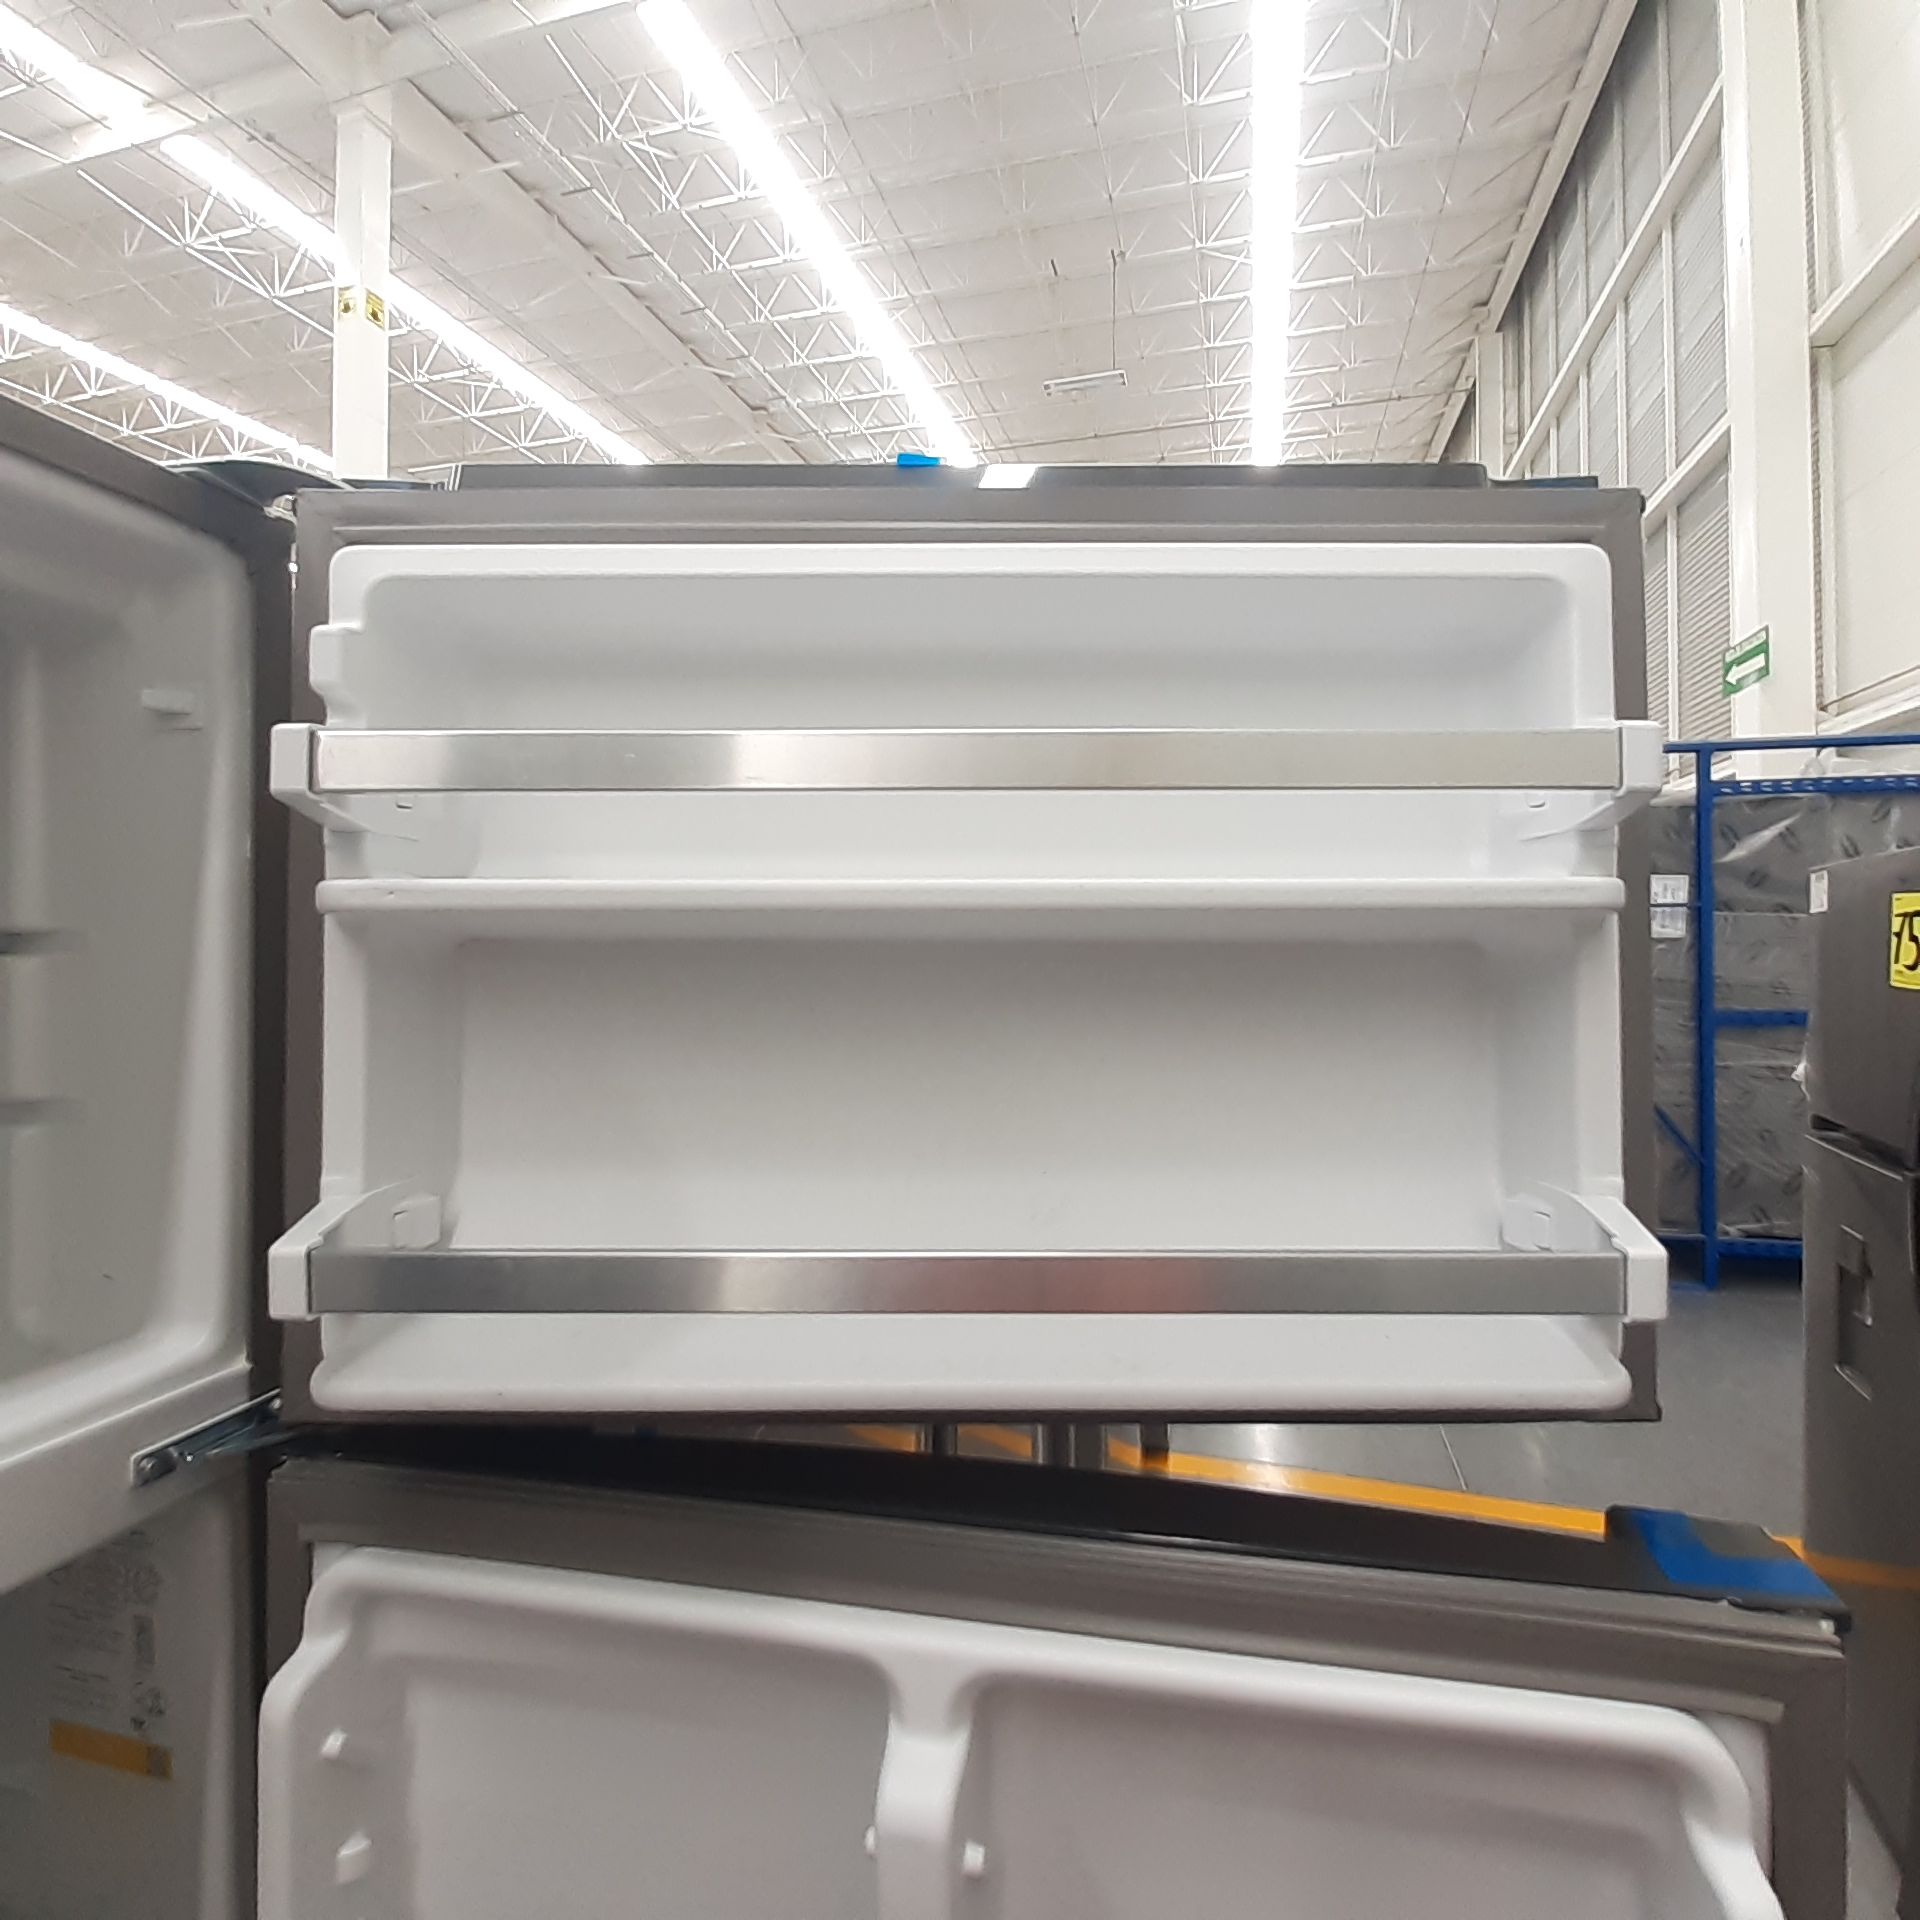 Lote De 2 Refrigeradores: 1 Refrigerador Marca Whirlpool, 1 Refrigerador Marca Mabe, Distintos Model - Image 20 of 22